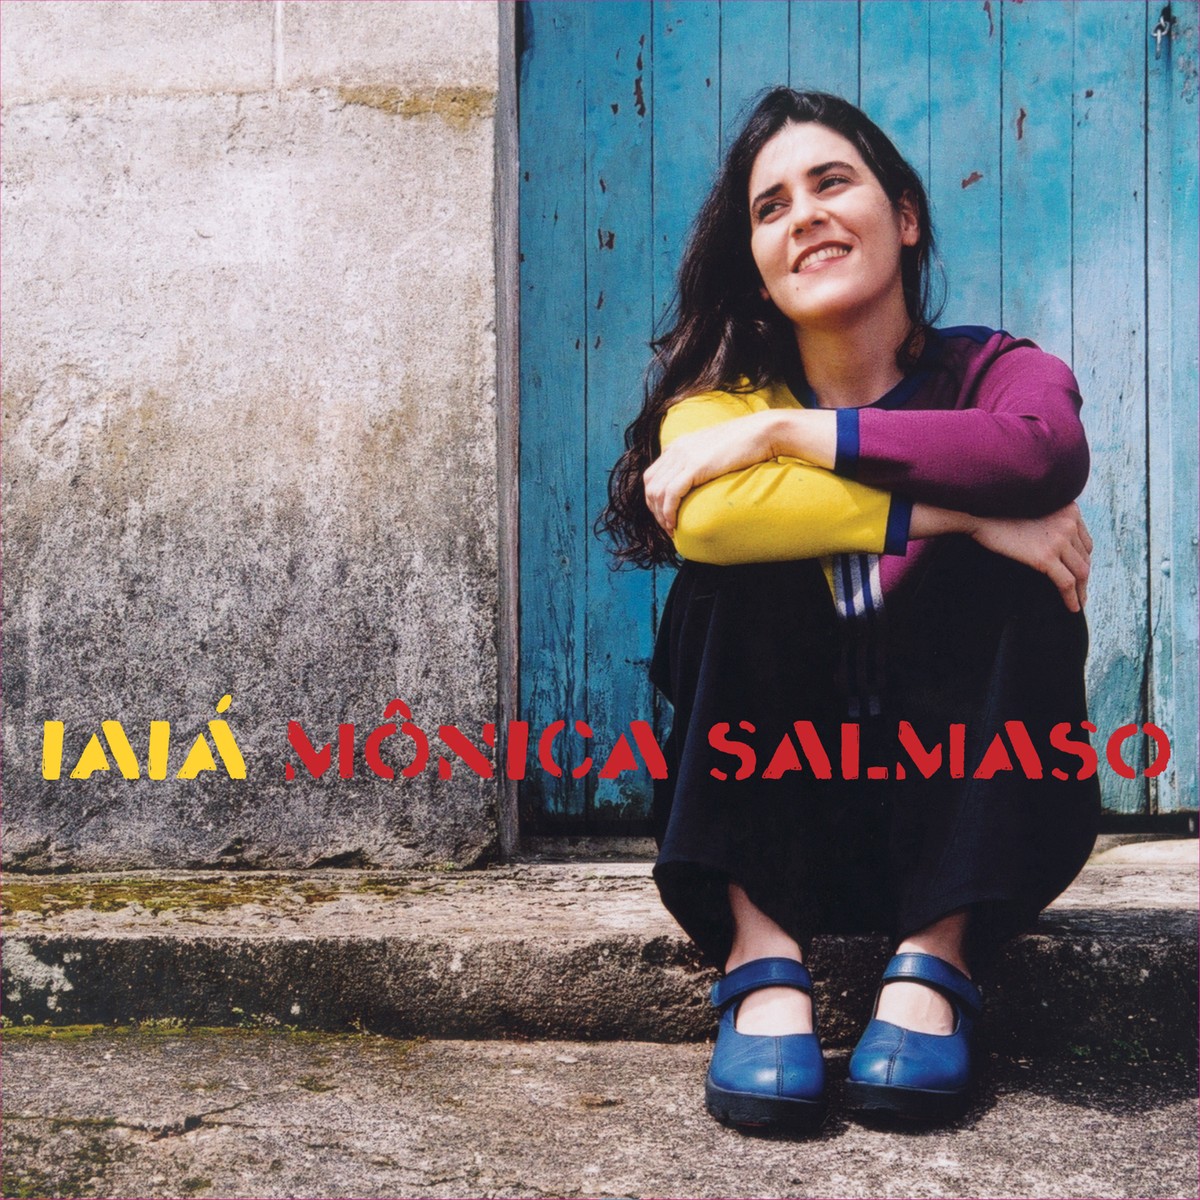 Mônica Salmaso tem quarto álbum, ‘Iaiá’, editado em LP com 11 das 13 faixas do CD original de 2004 | Blog do Mauro Ferreira